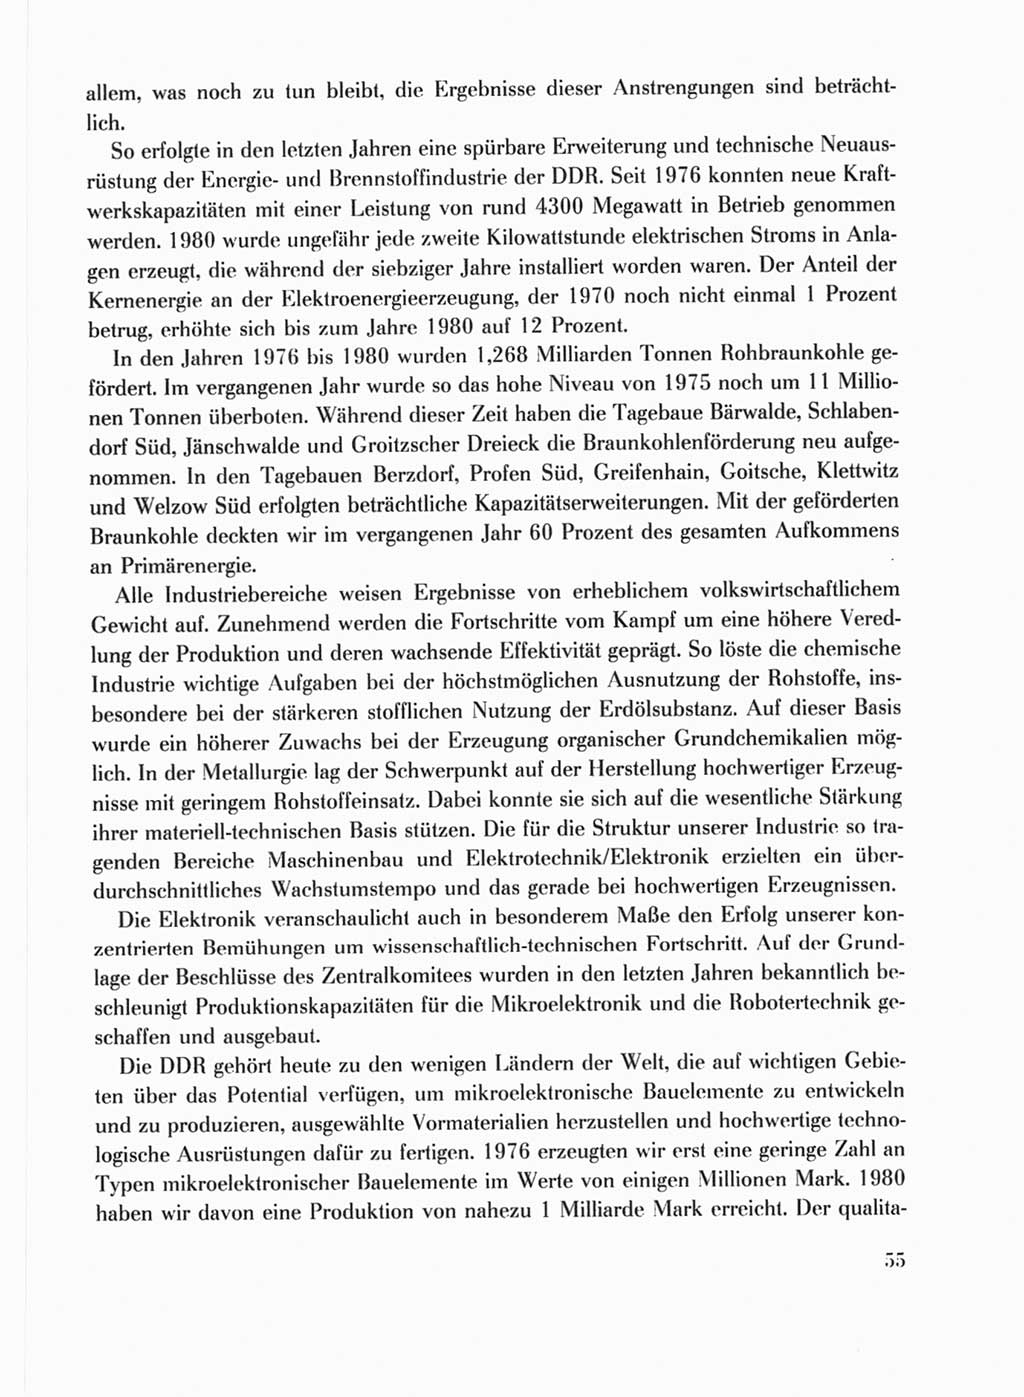 Protokoll der Verhandlungen des Ⅹ. Parteitages der Sozialistischen Einheitspartei Deutschlands (SED) [Deutsche Demokratische Republik (DDR)] 1981, Band 1, Seite 55 (Prot. Verh. Ⅹ. PT SED DDR 1981, Bd. 1, S. 55)